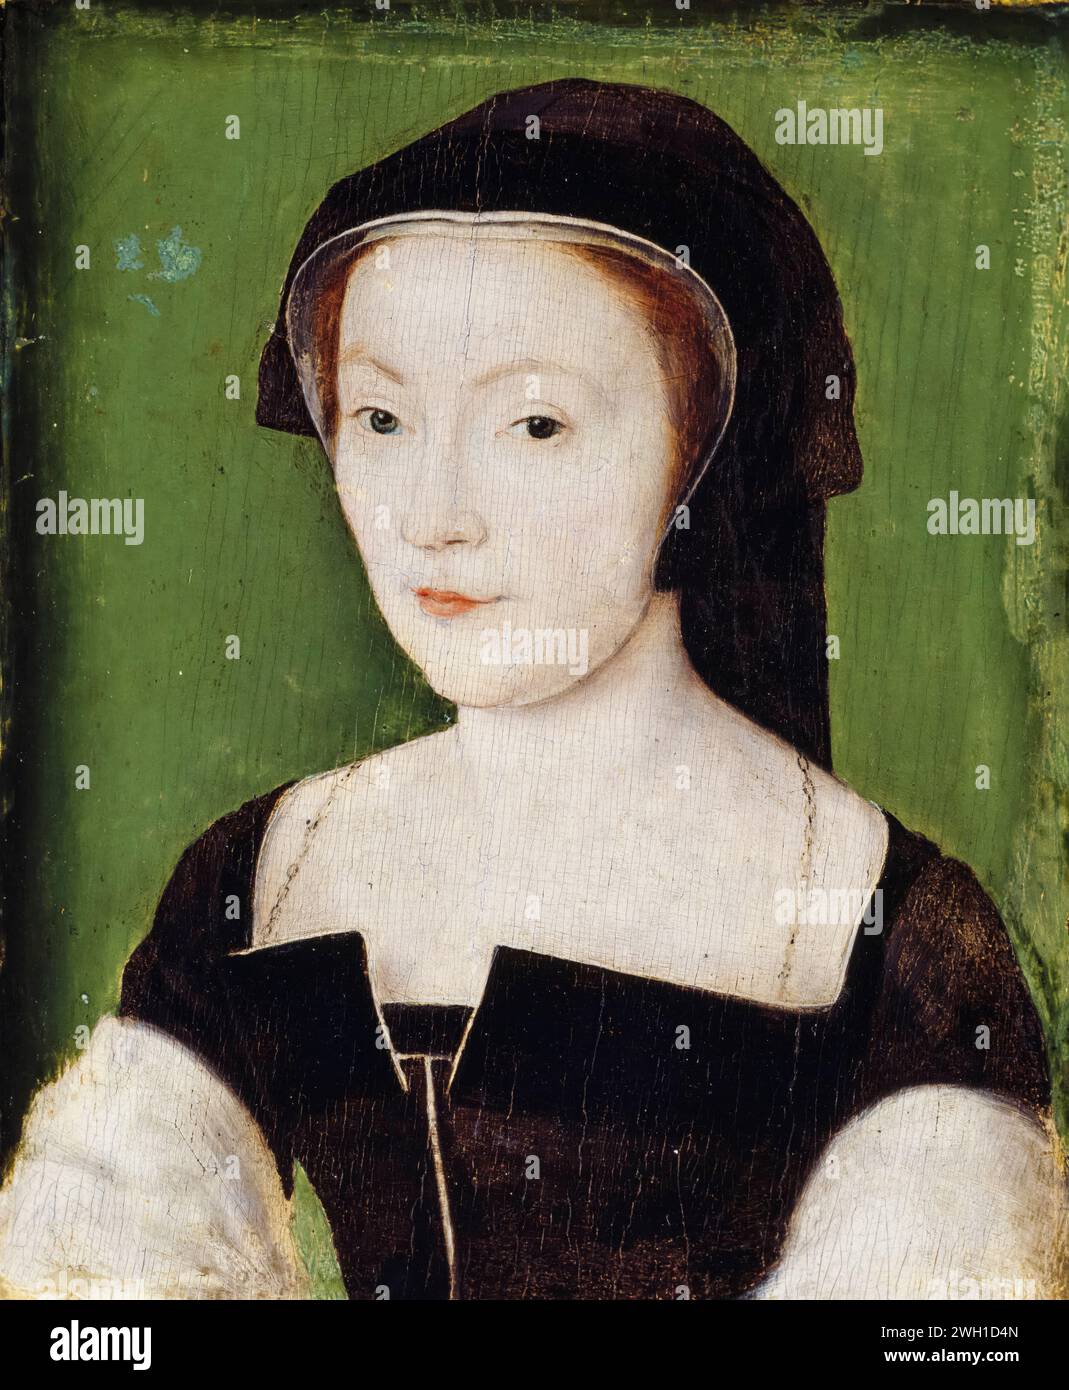 María de Guisa (1515-1560), también llamada María de Lorena, reina consorte de Escocia (1538-1542), pintura de retrato en óleo sobre tabla de Corneille de Lyon (atribuido), circa 1537 Foto de stock